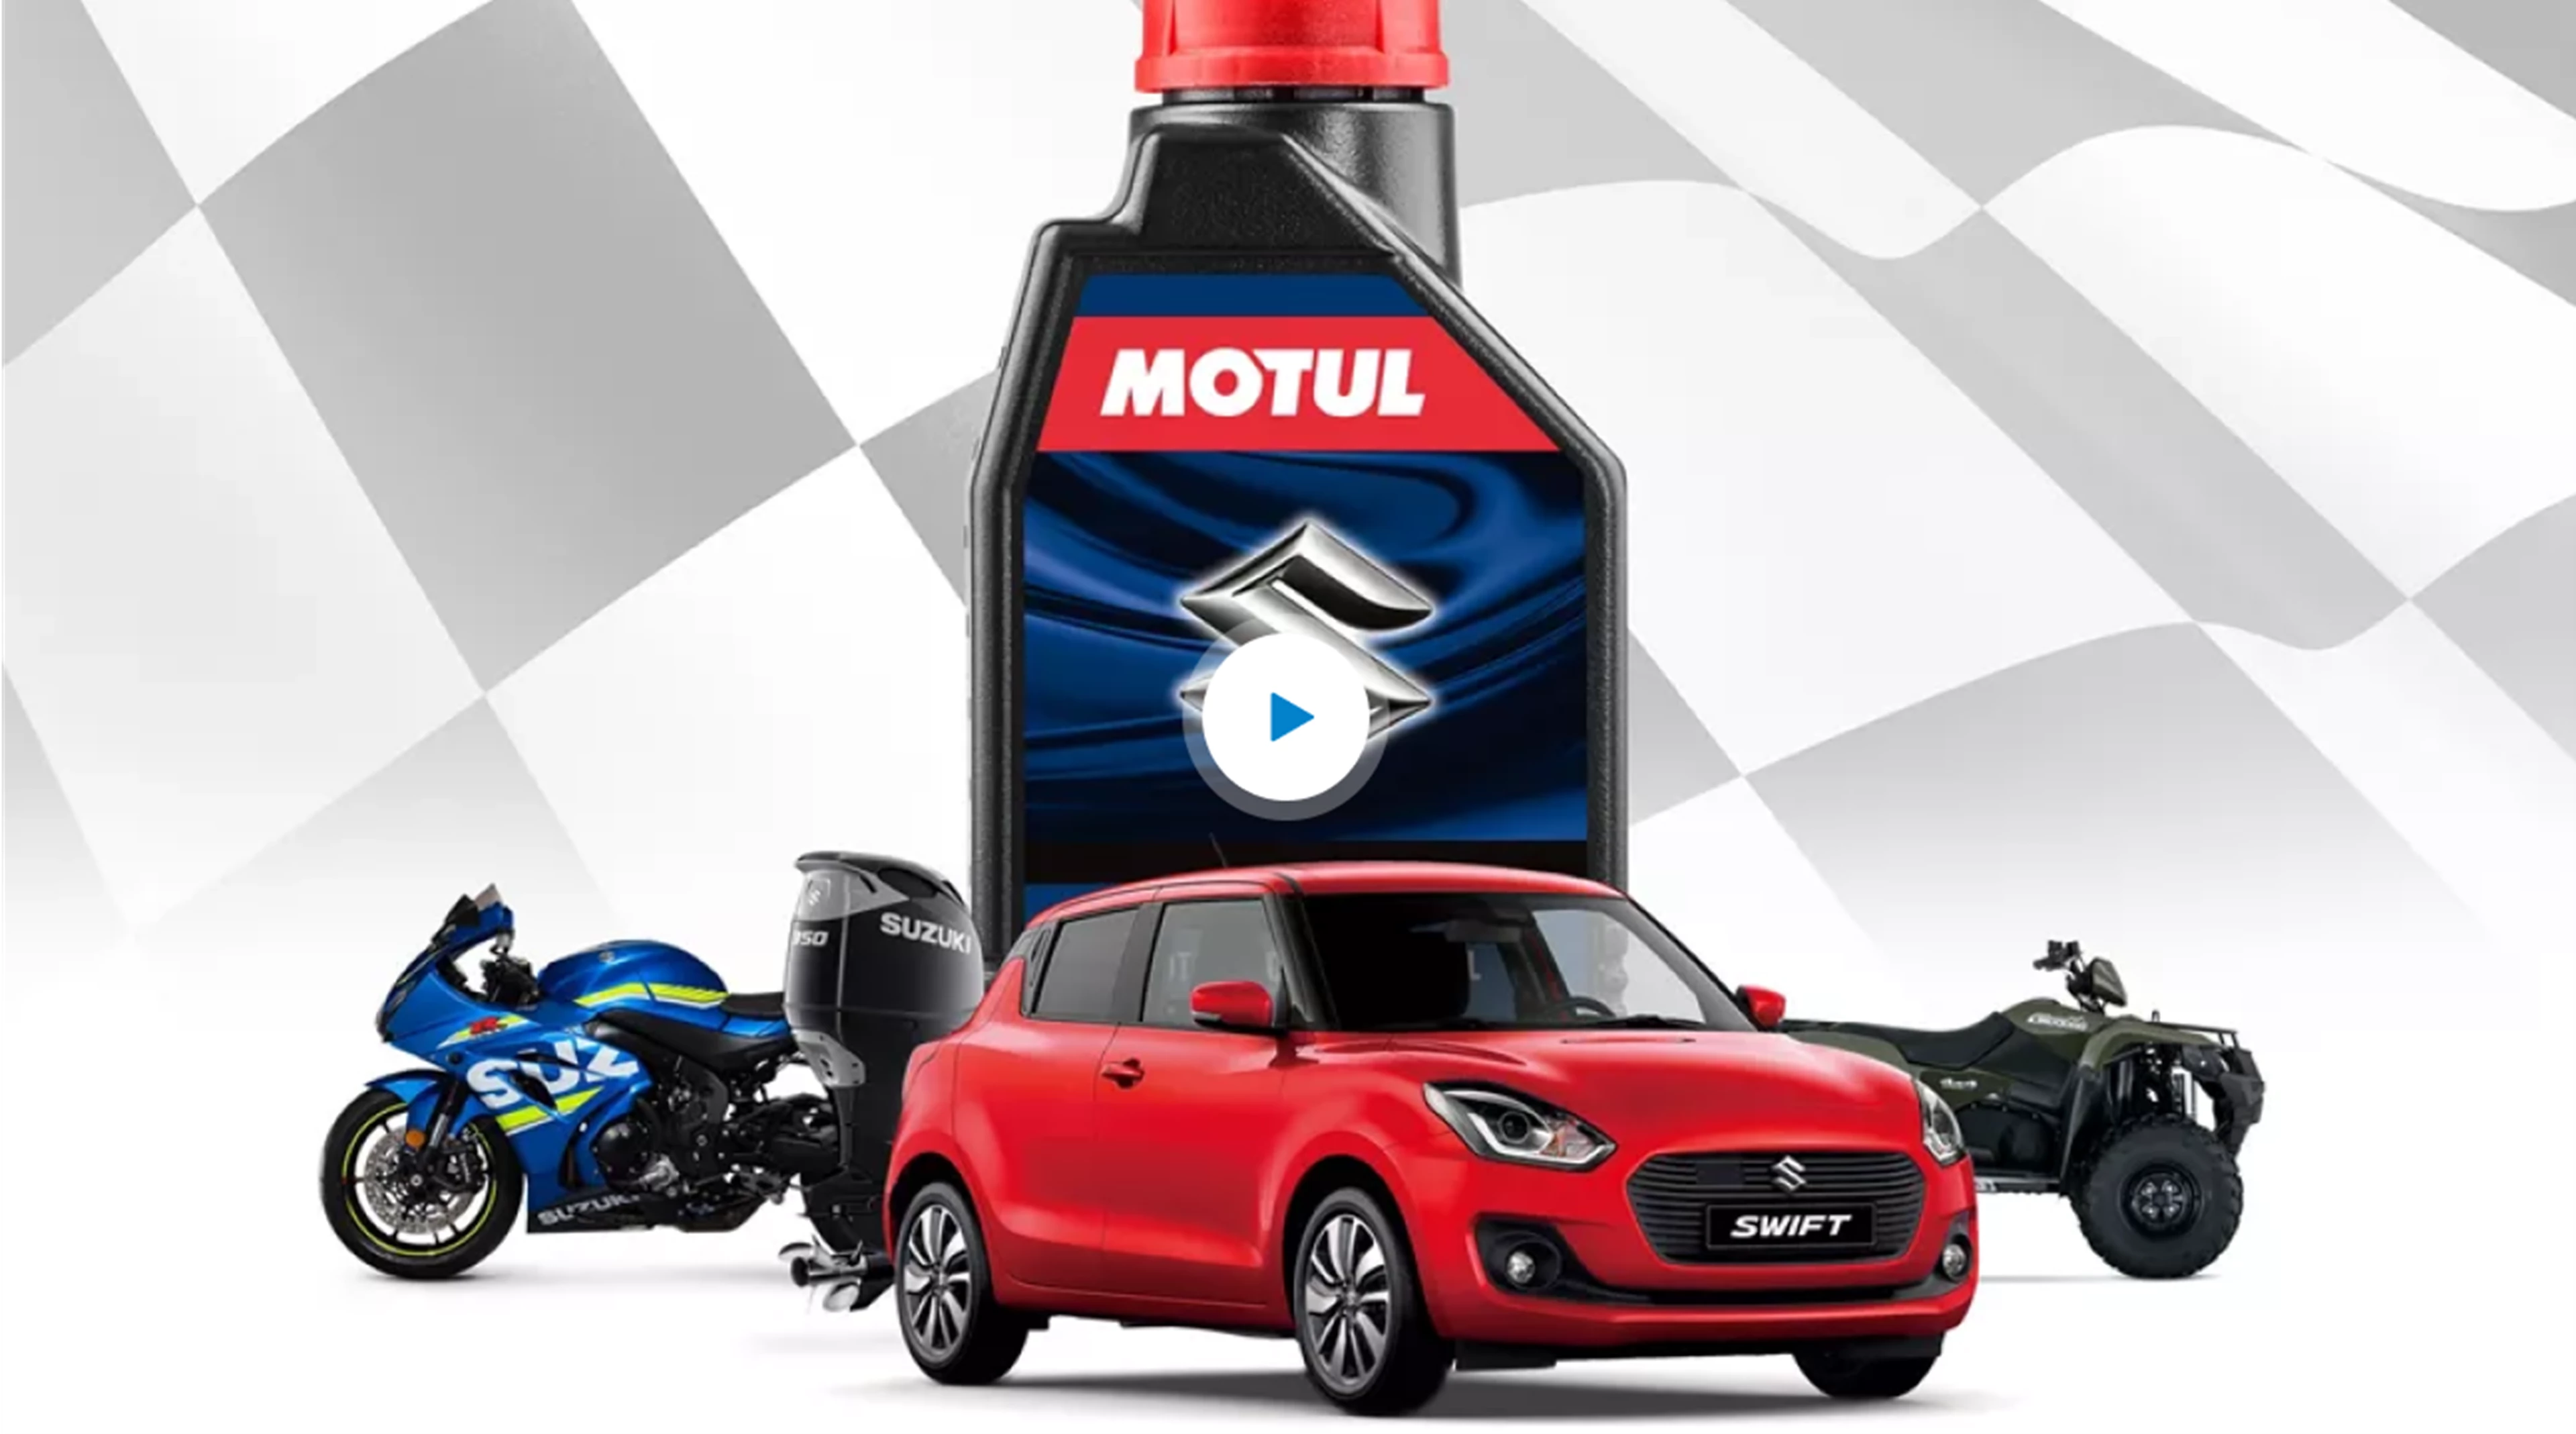 Full Suzuki range with Motul Bottle